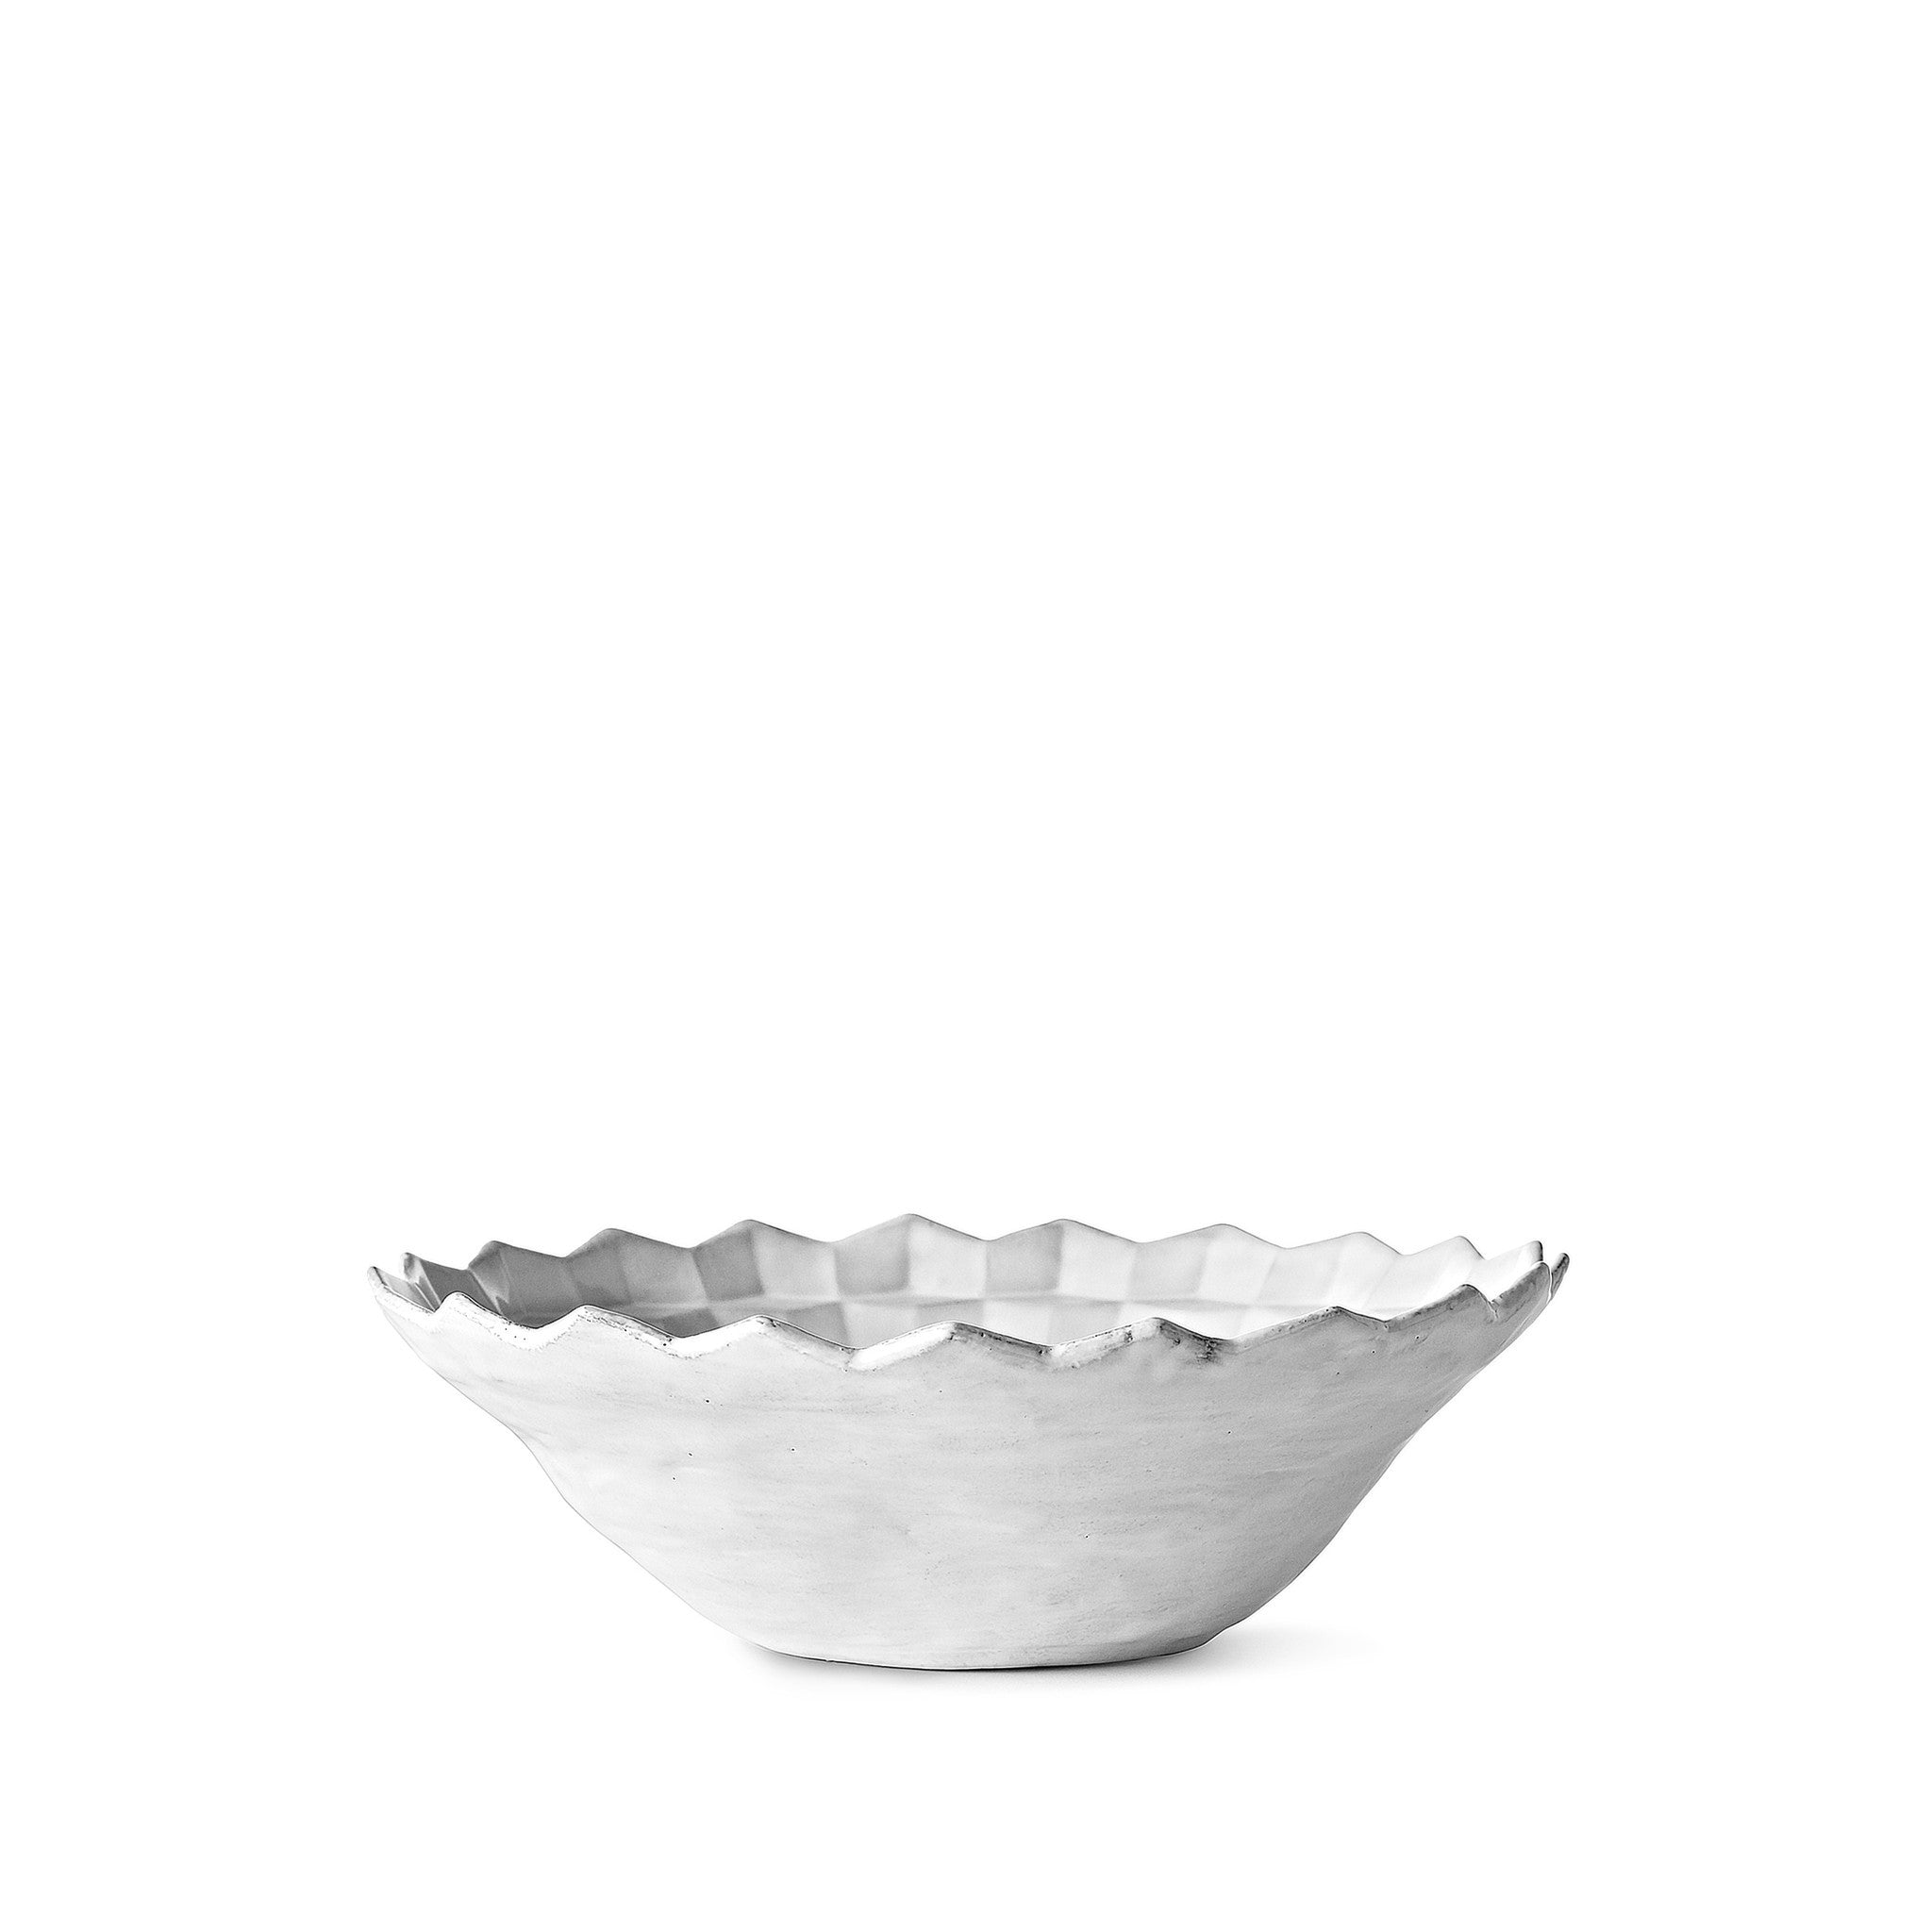 Cube Salad Bowl by Astier de Villatte, 15cm